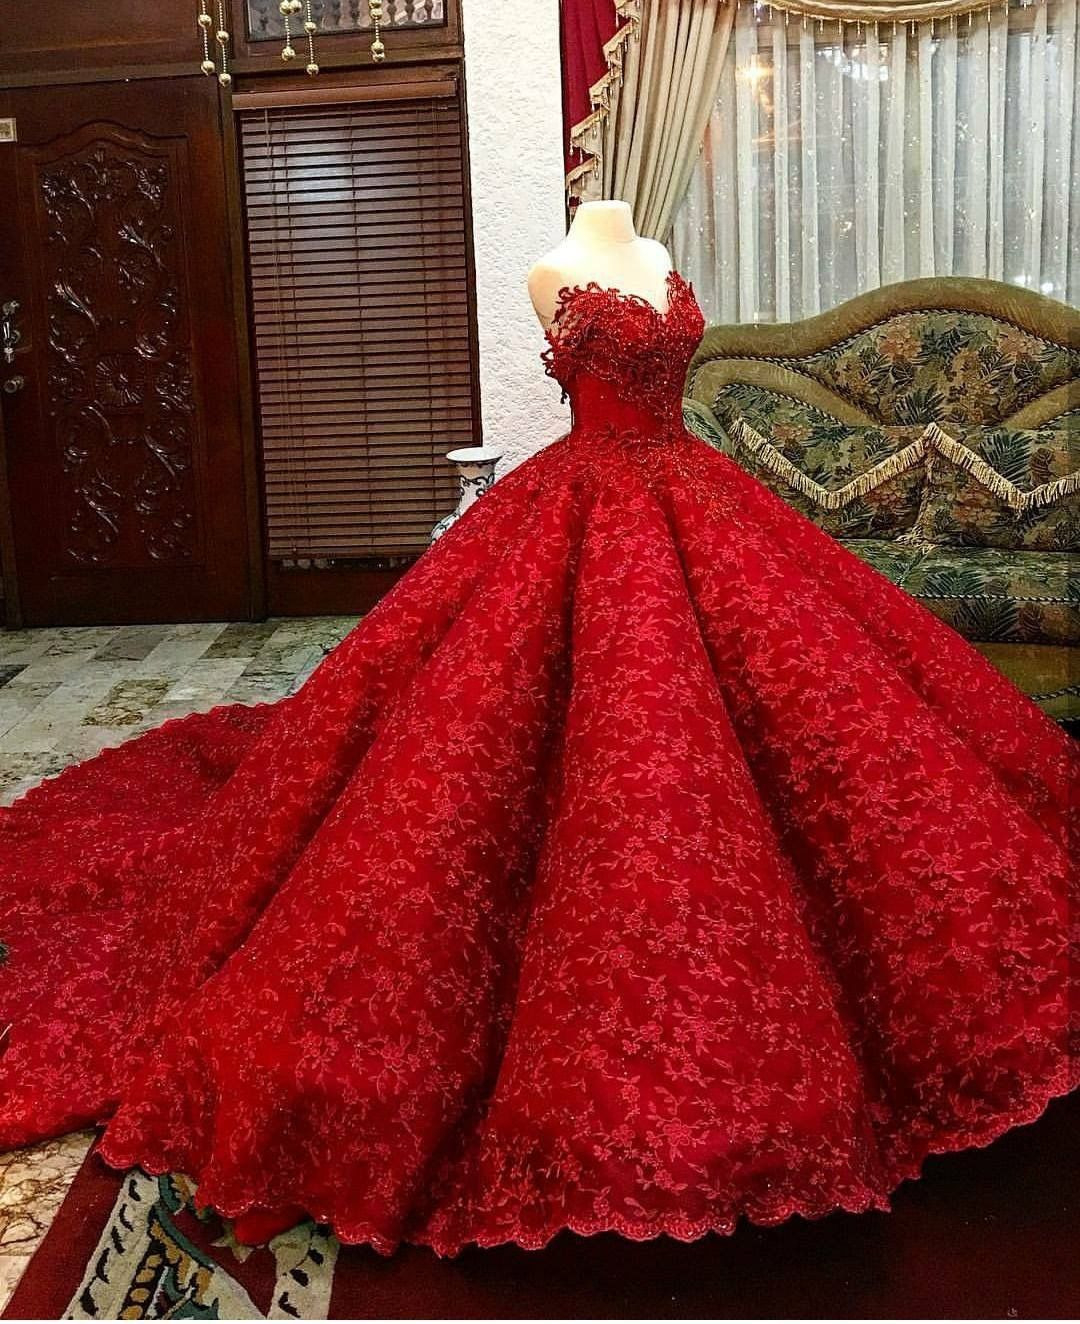 Formal Schön Henna Abend Kleid Rot für 2019Formal Perfekt Henna Abend Kleid Rot Stylish